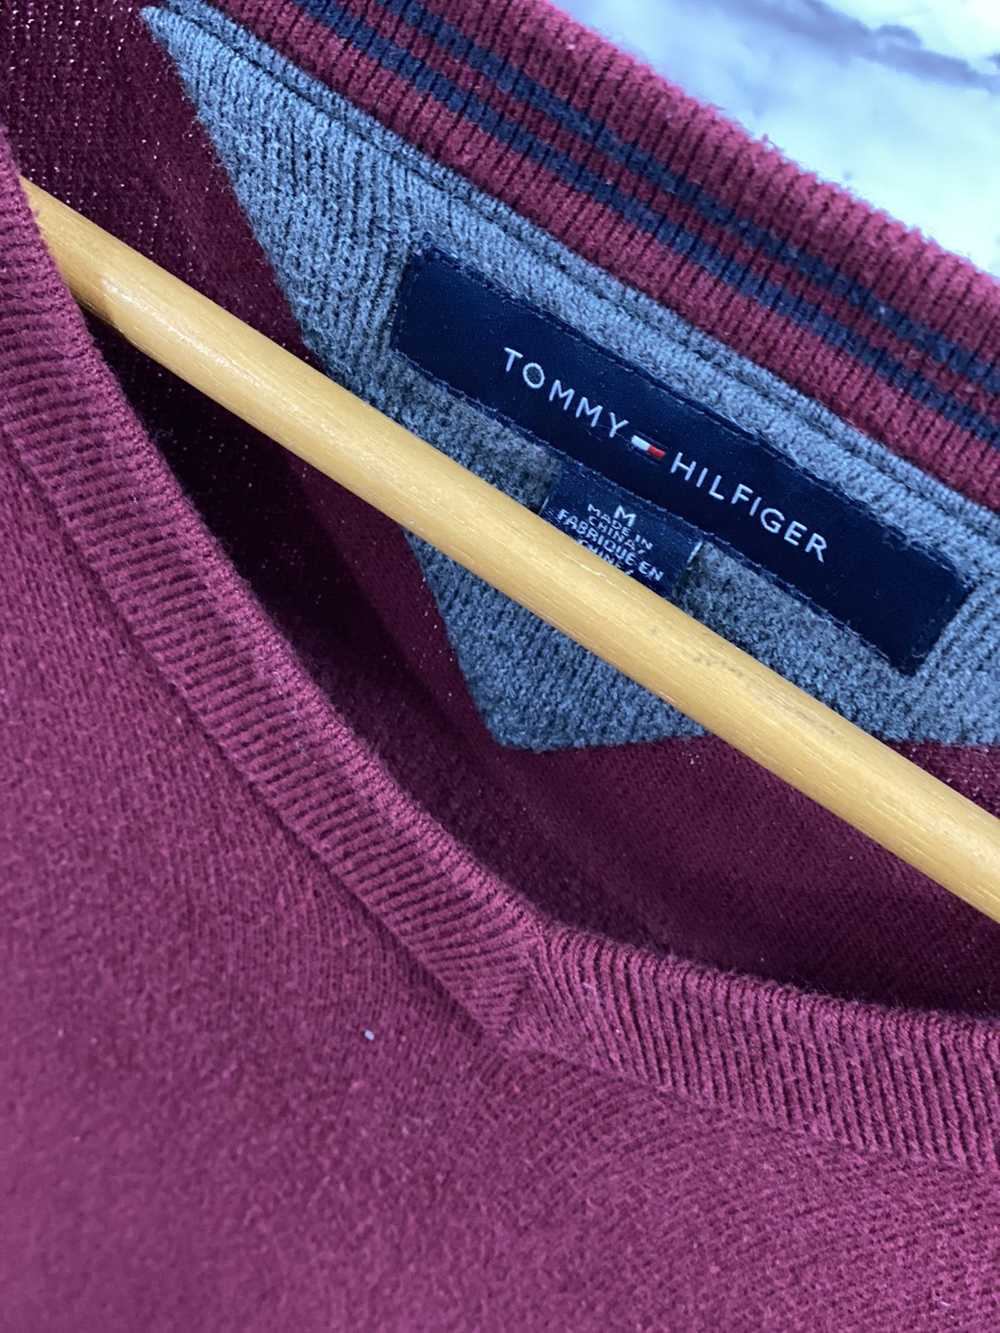 Tommy Hilfiger Tommy Hilfiger Burgundy Sweater - image 2